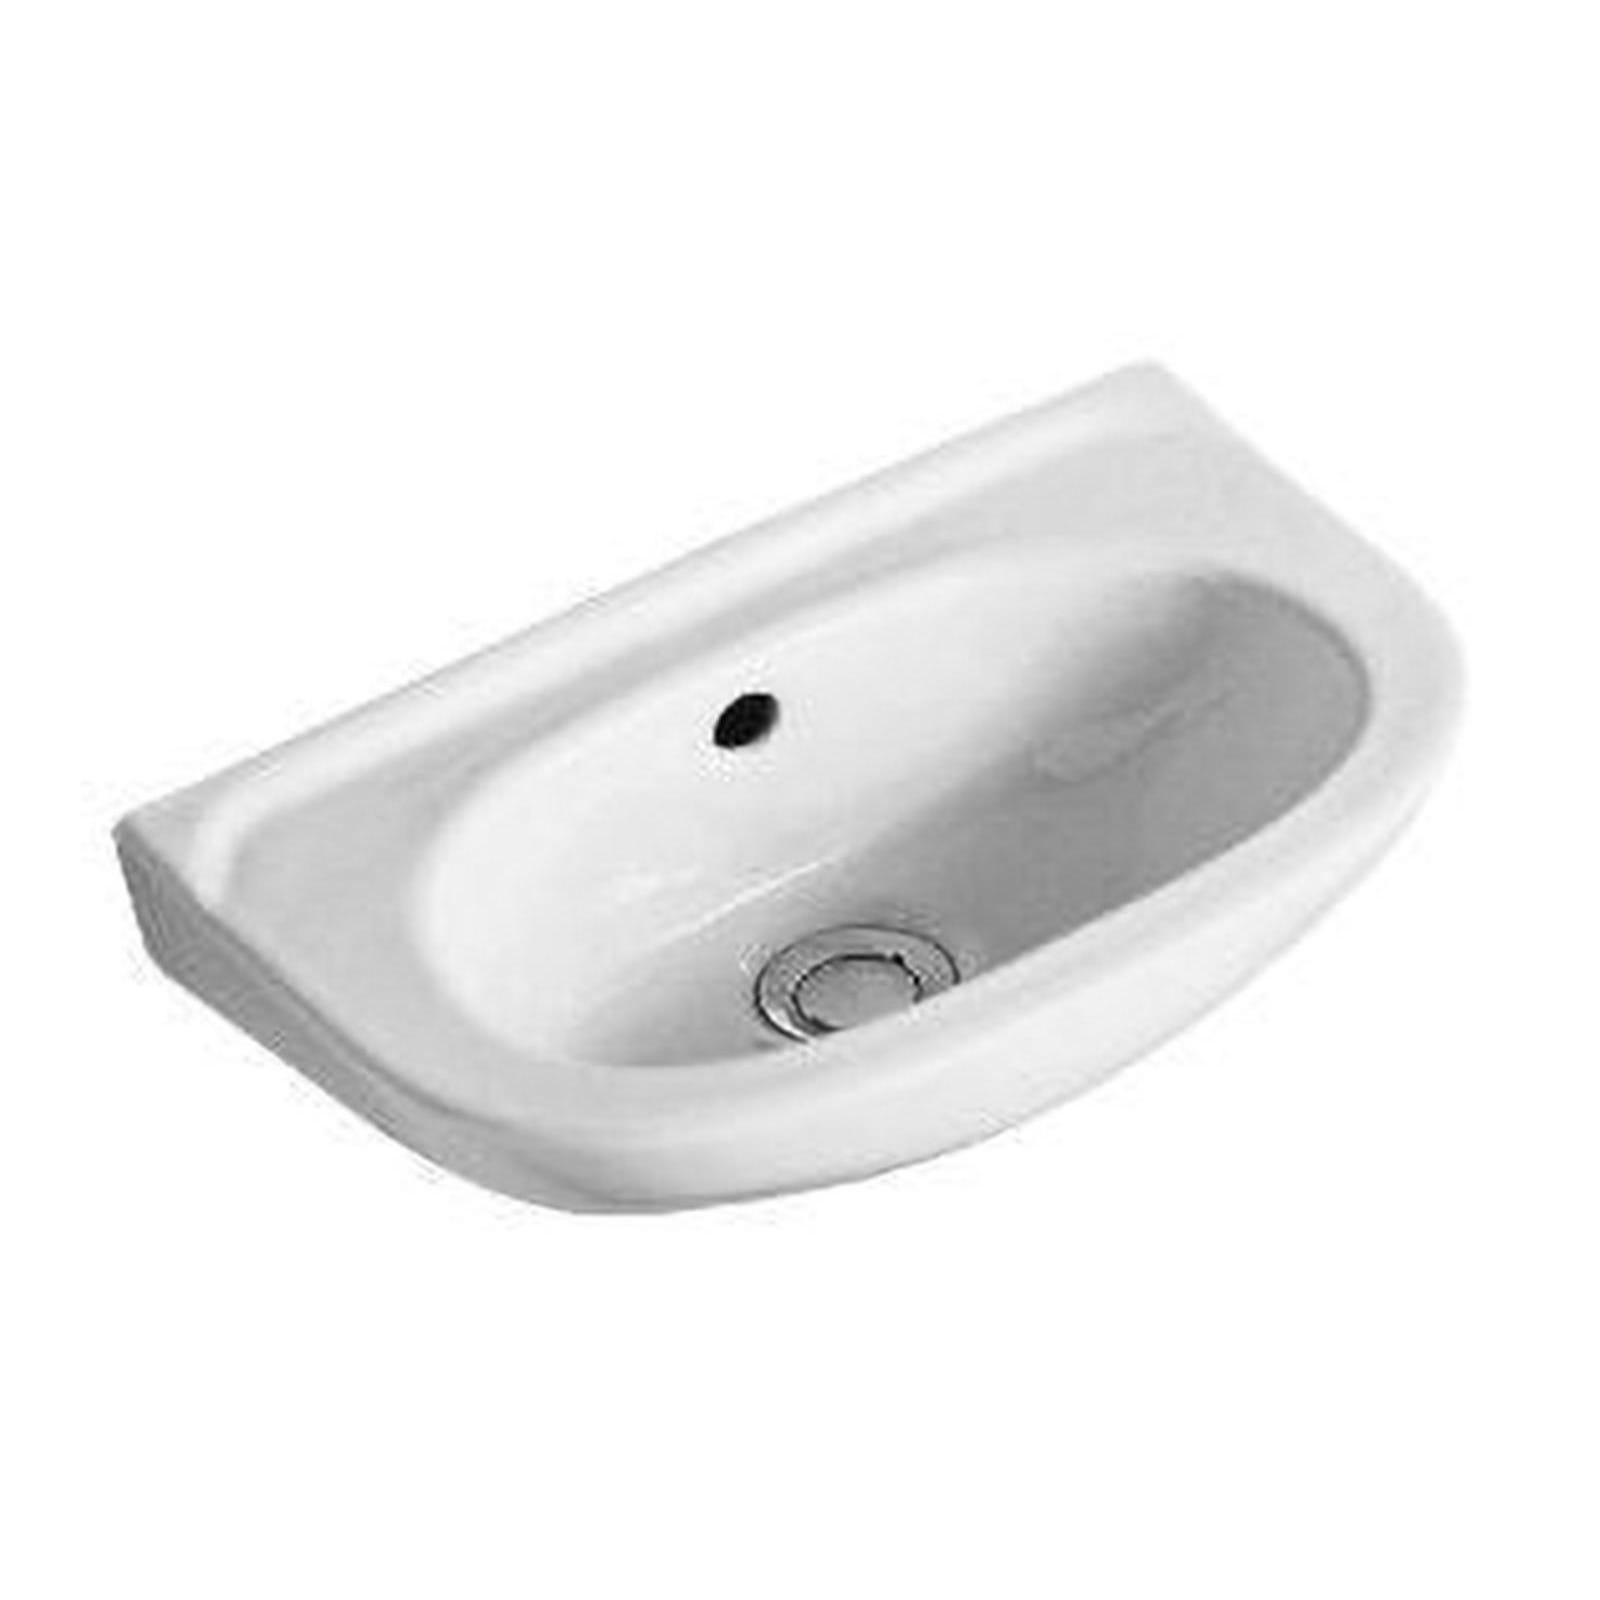 Lave-mains VOLTA COMPACT - Longueur : 40 cm - Largeur : 25 cm - Couleur : blanc 0